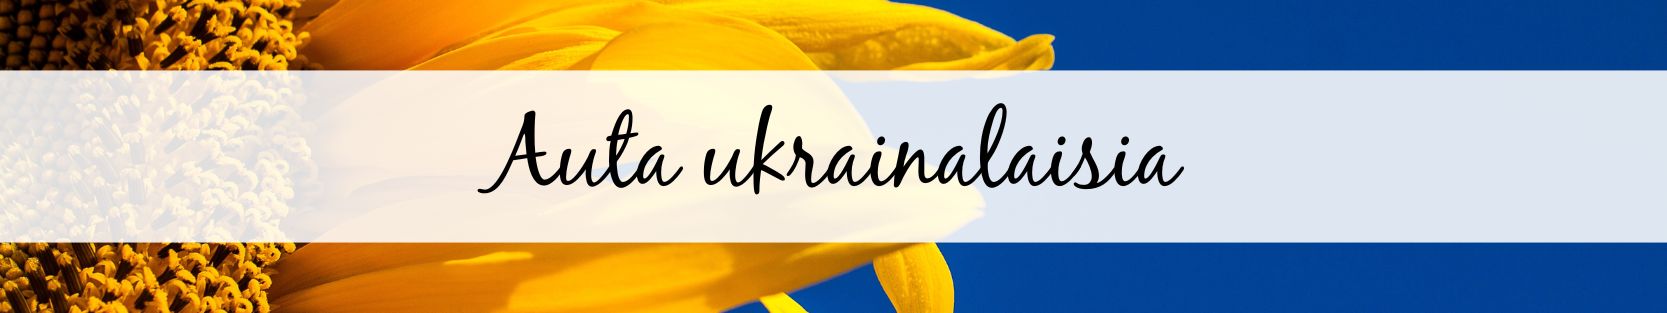 Auta ukrainalaisia